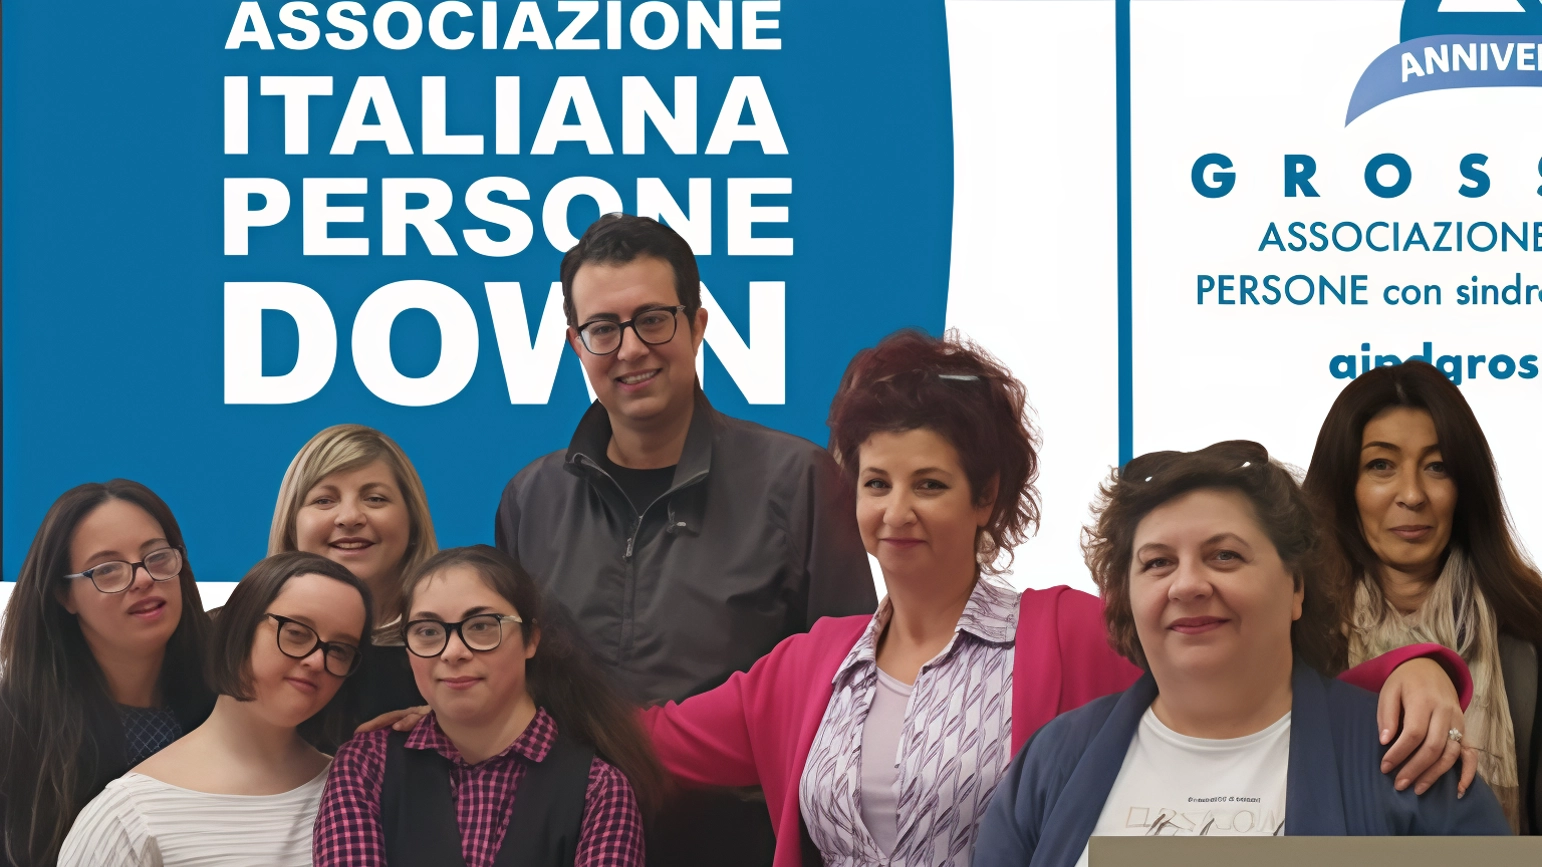 La sezione di Grosseto dell'Associazione Italiana Persone Down ringrazia la Fondazione Cassa di Risparmio di Firenze per finanziare il progetto "Casa Nostra!" che mira a rendere i ragazzi con sindrome di Down indipendenti, promuovendo l'autodeterminazione e l'autonomia nella vita quotidiana.